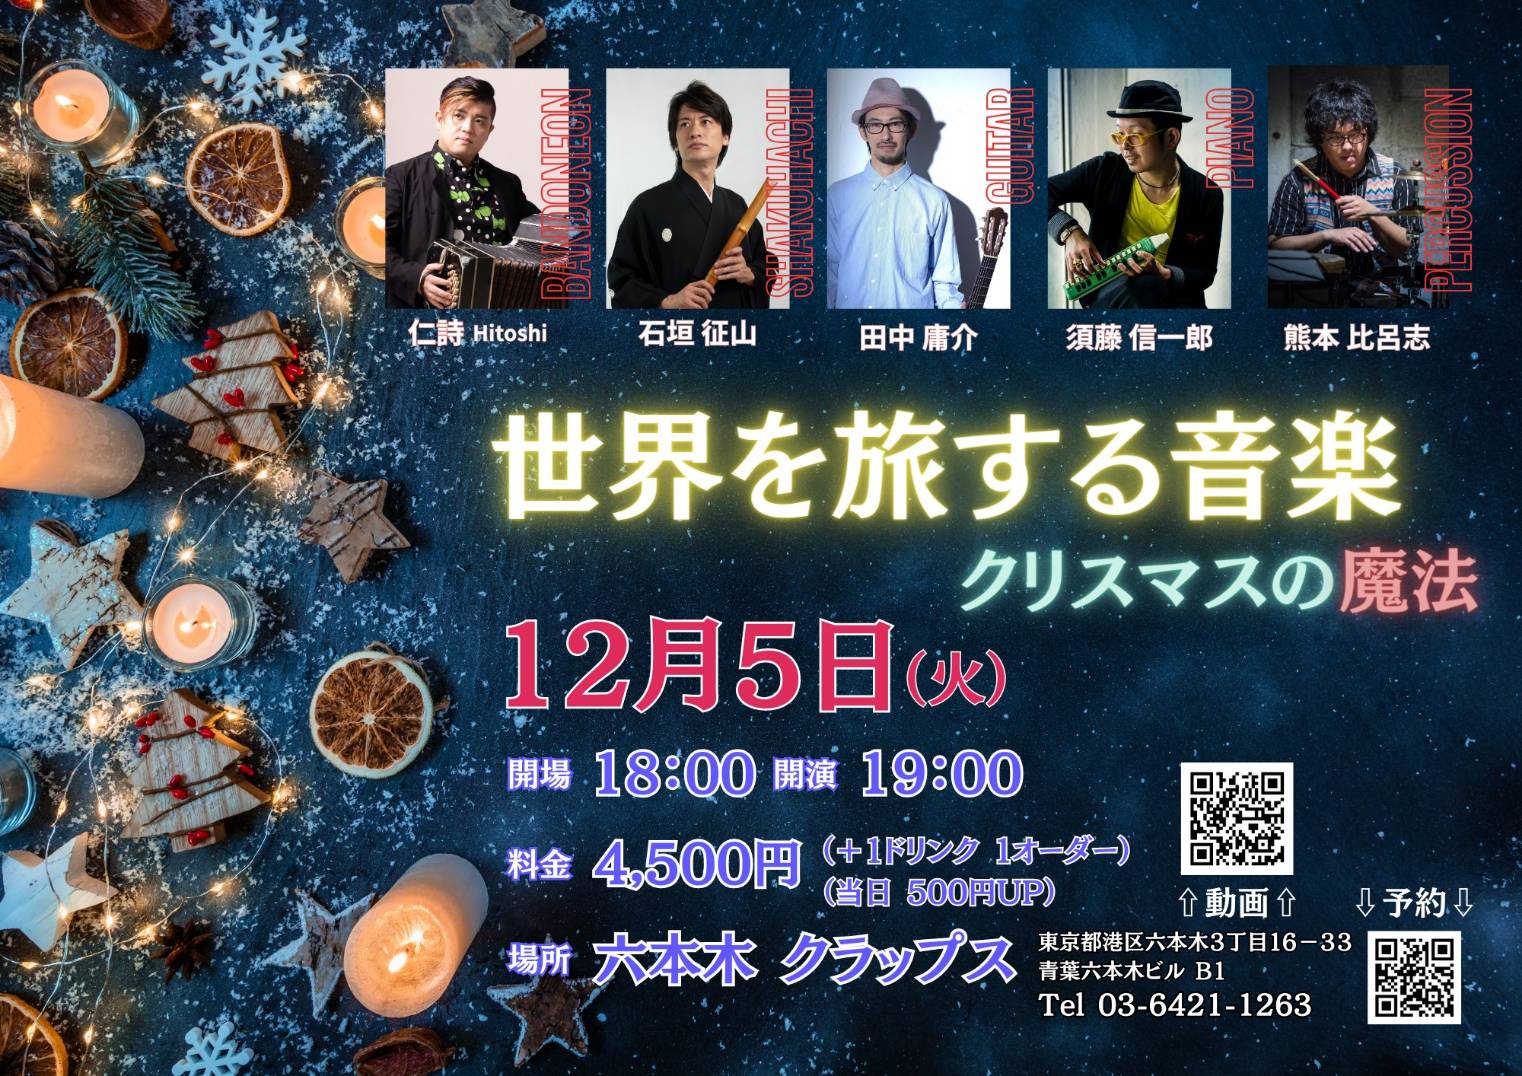 【東京】世界を旅する音楽~クリスマスの魔法~